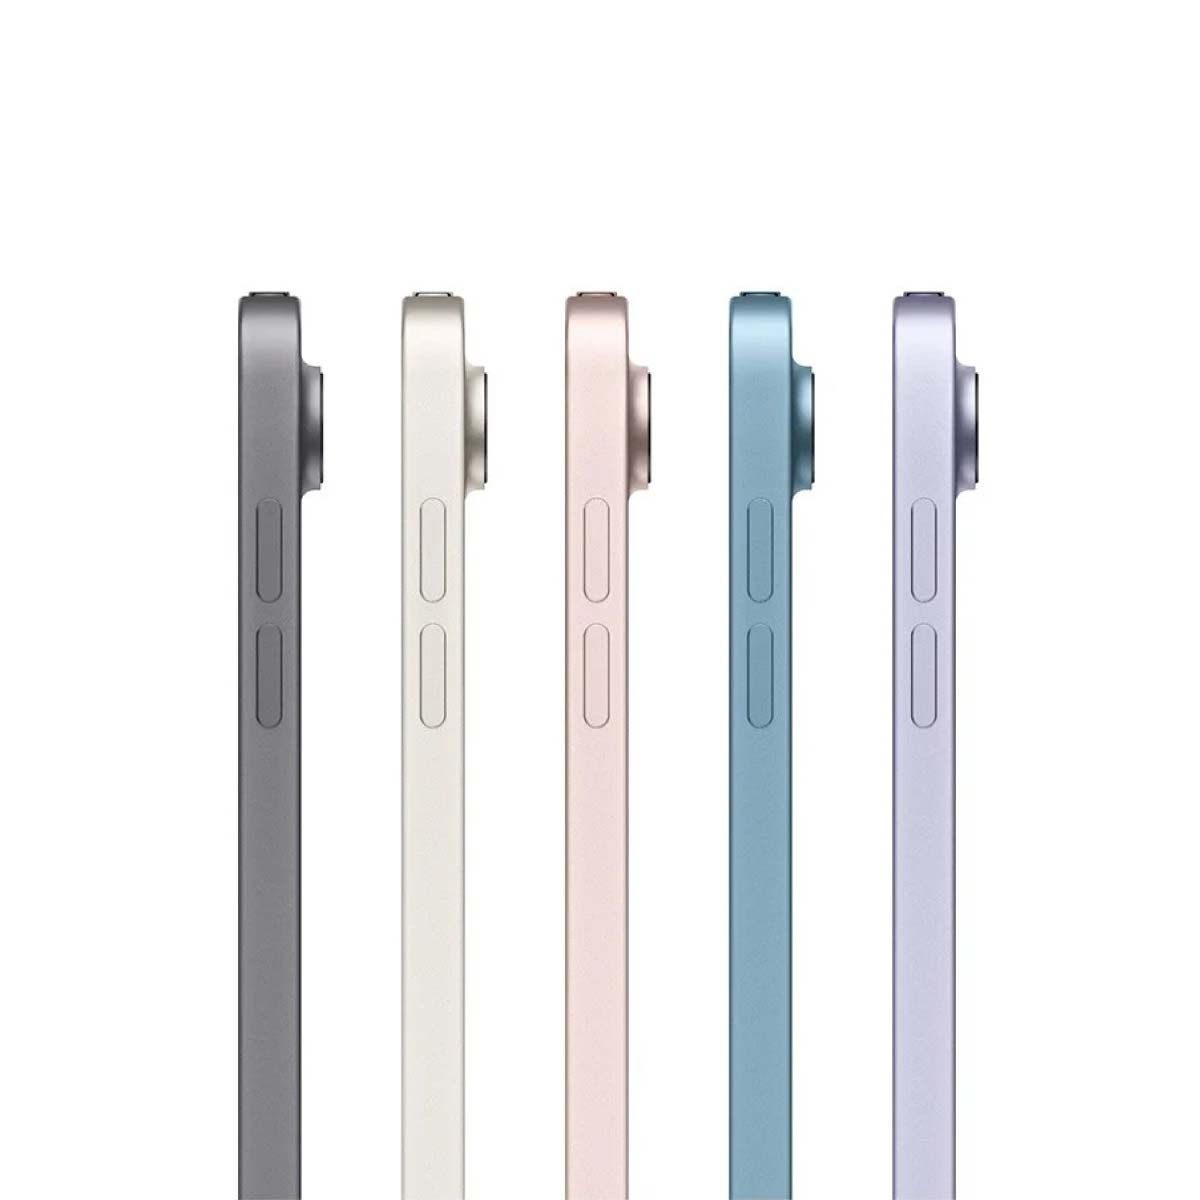 Apple iPad Air (รุ่นที่ 5) Wi-Fi ความจุ 256GB สีเงิน